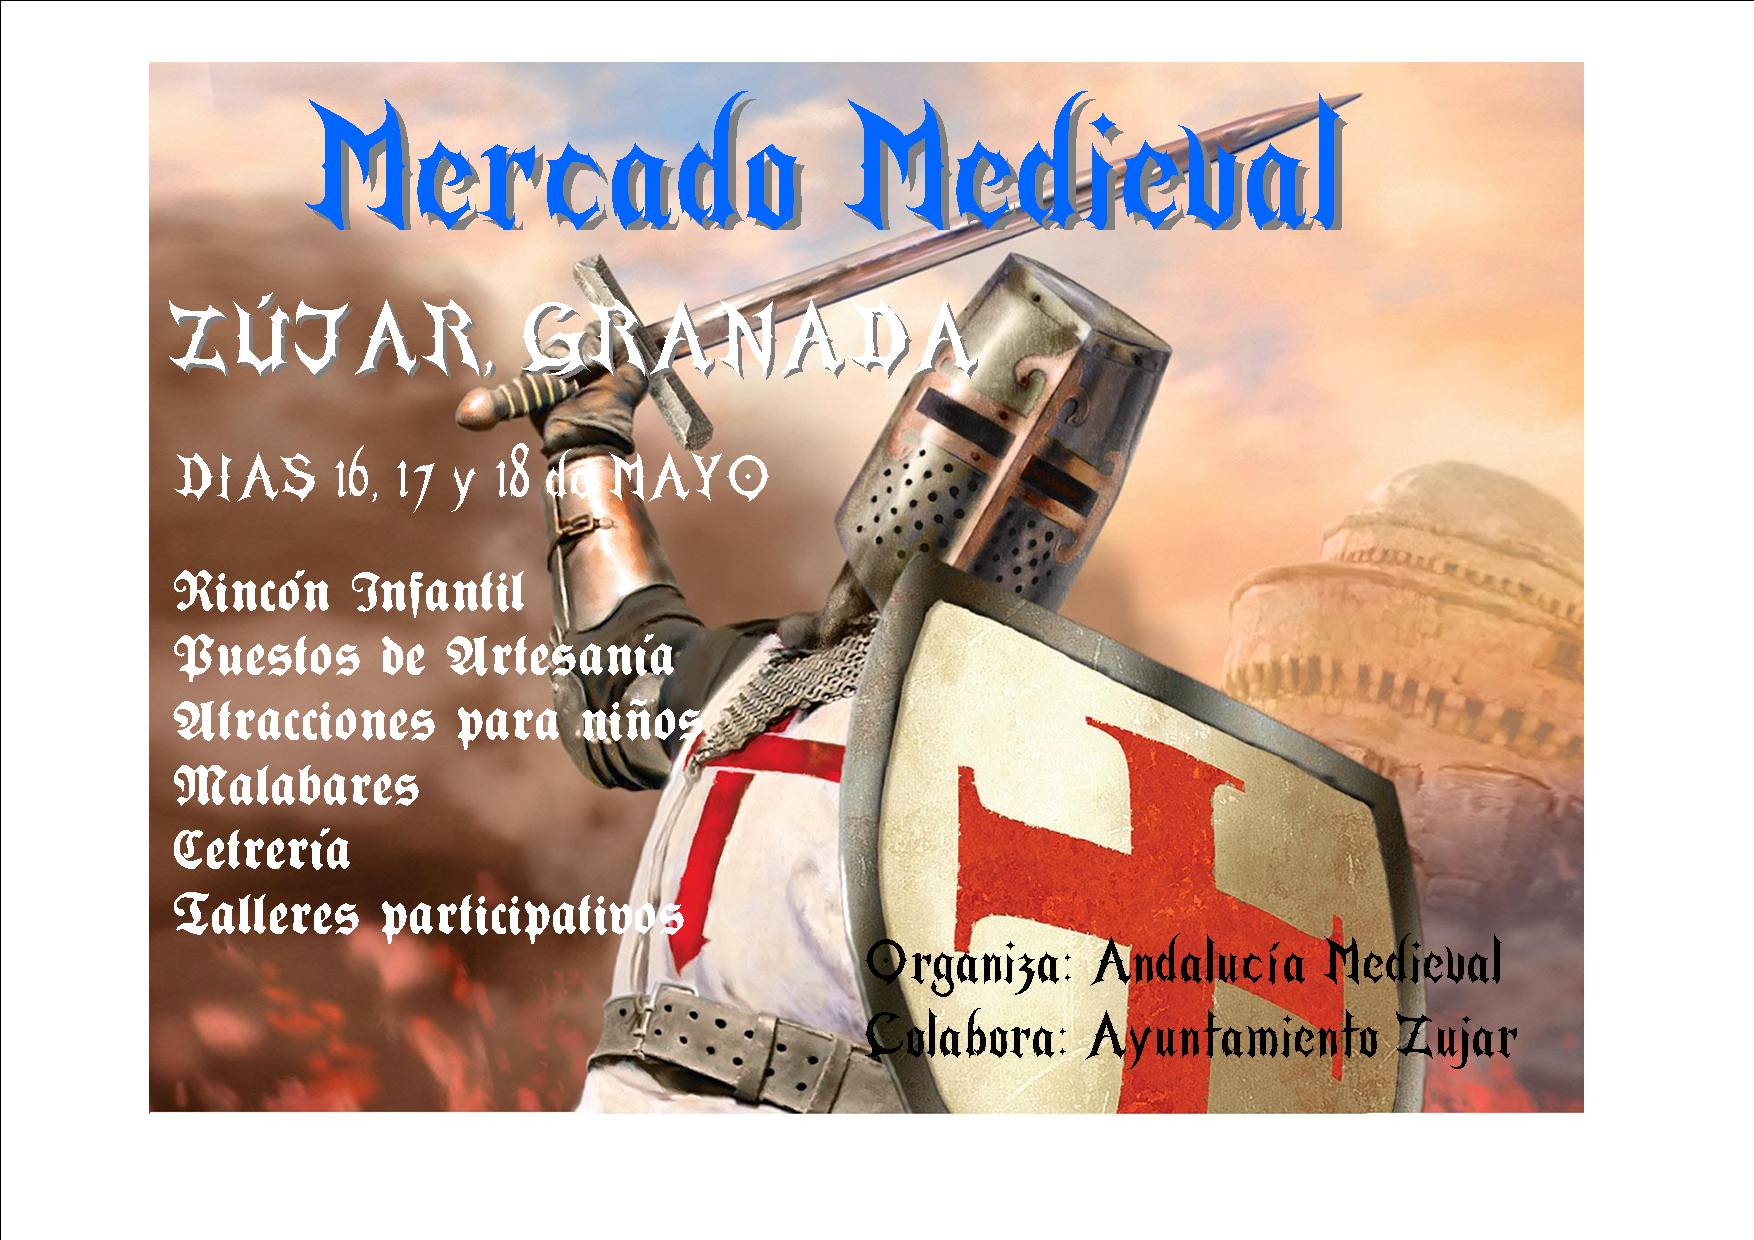 16 al 18 de mayo – Mercado medieval en Zujar, Granada